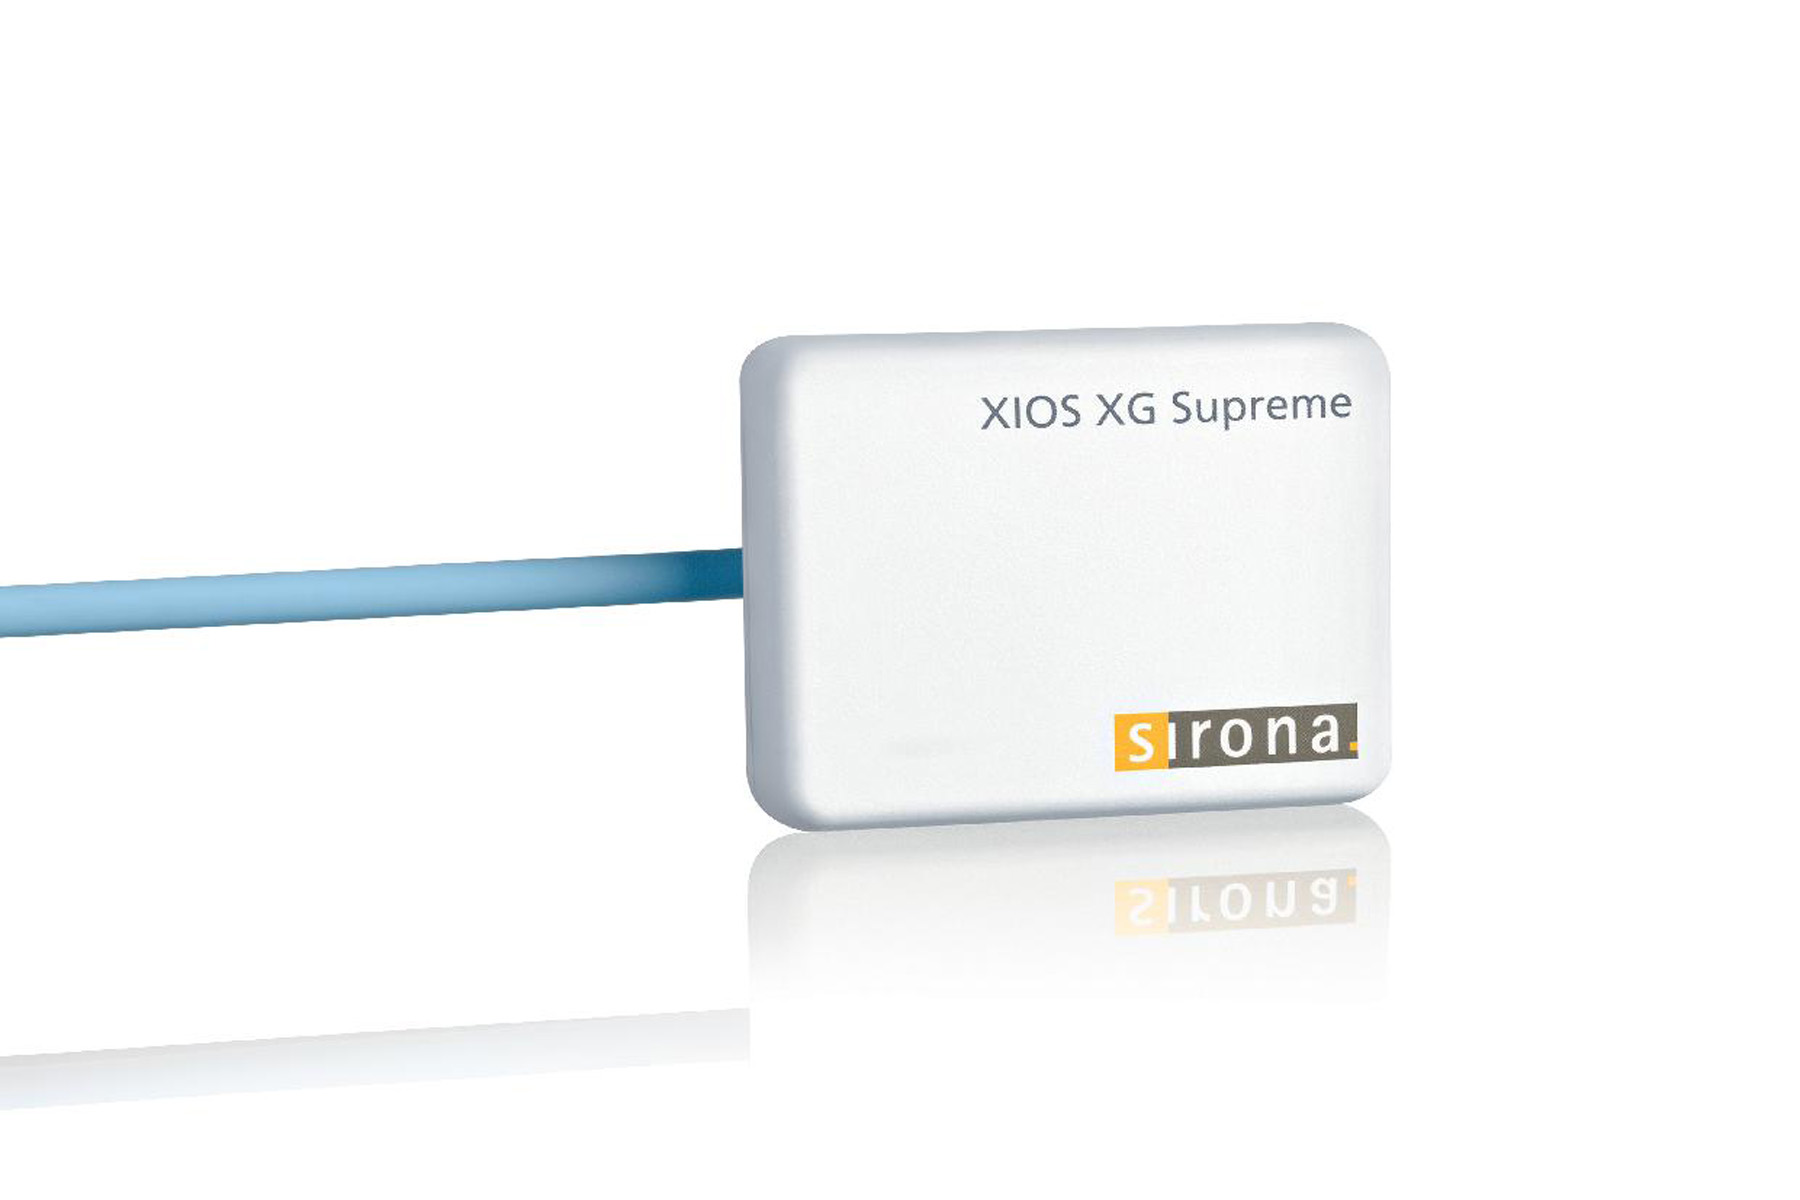 XIOS XG Supreme WiFi module with sensor size 0